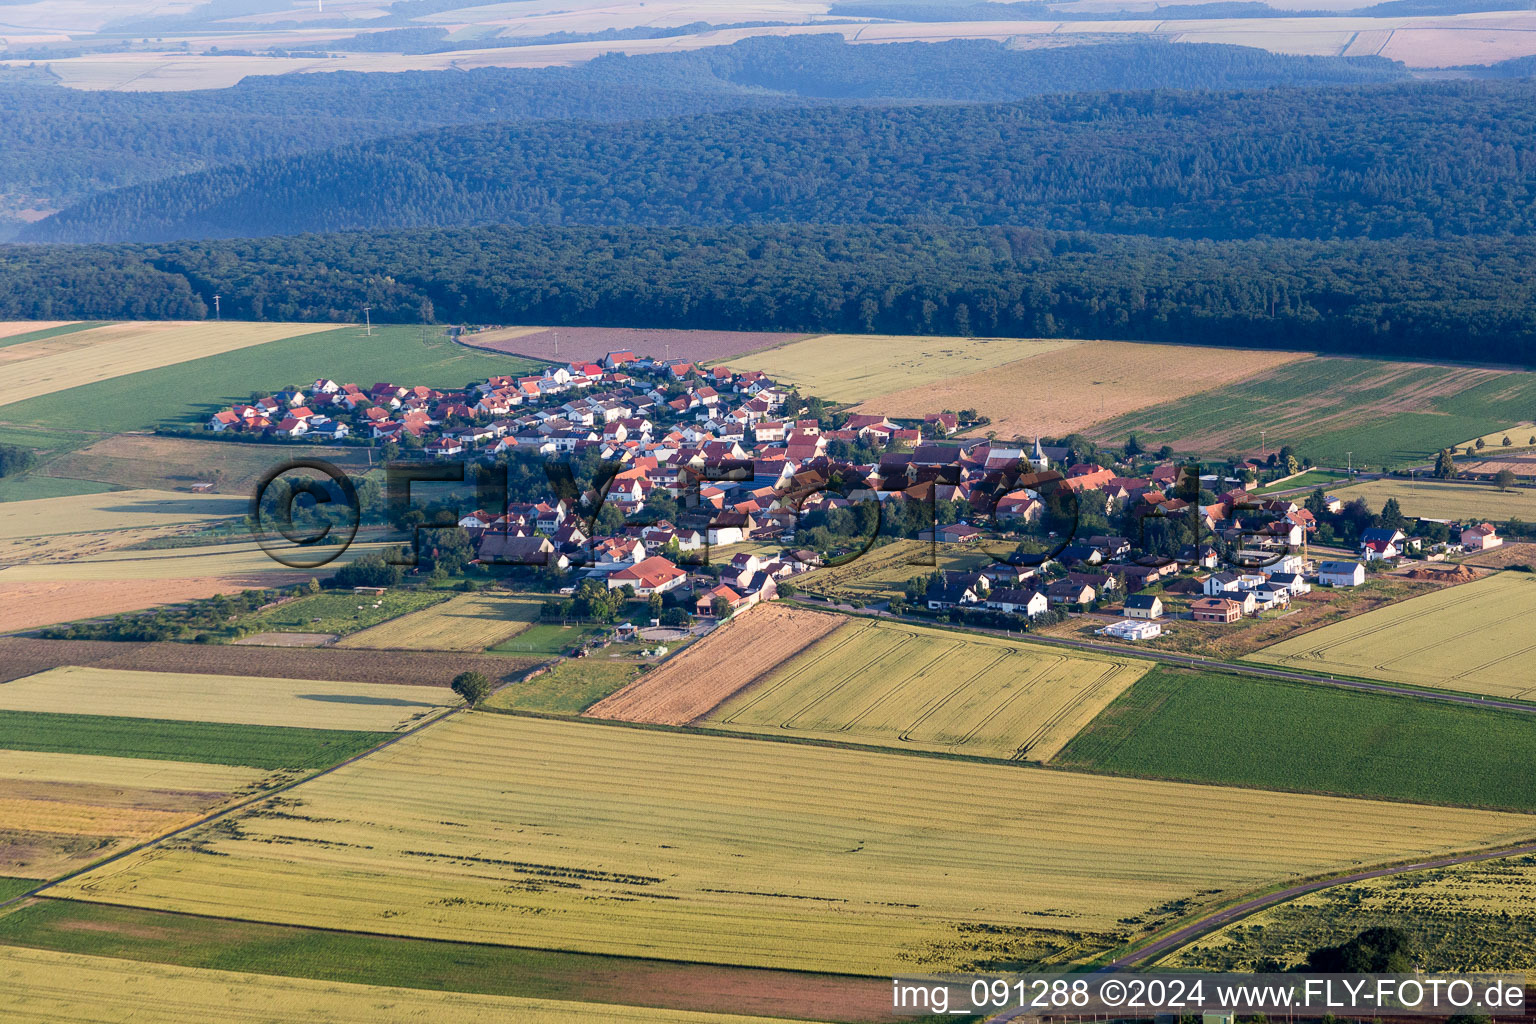 Vue aérienne de Champs agricoles et surfaces utilisables à Orbis dans le département Rhénanie-Palatinat, Allemagne